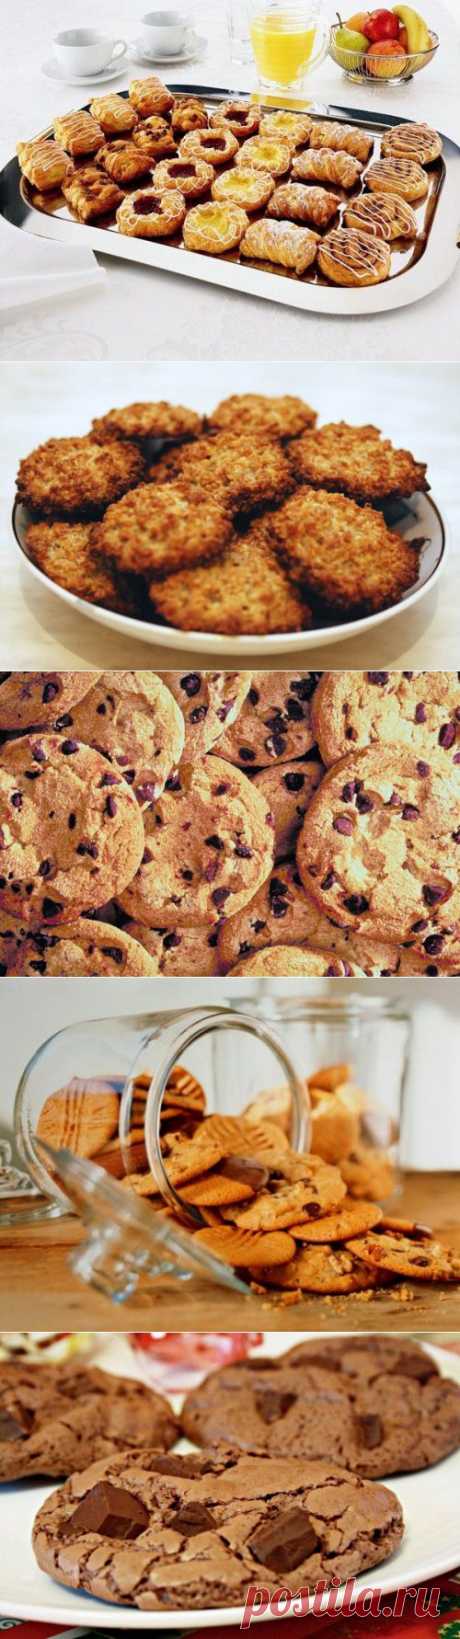 Домашнее печенье – отличное угощение! / Простые рецепты